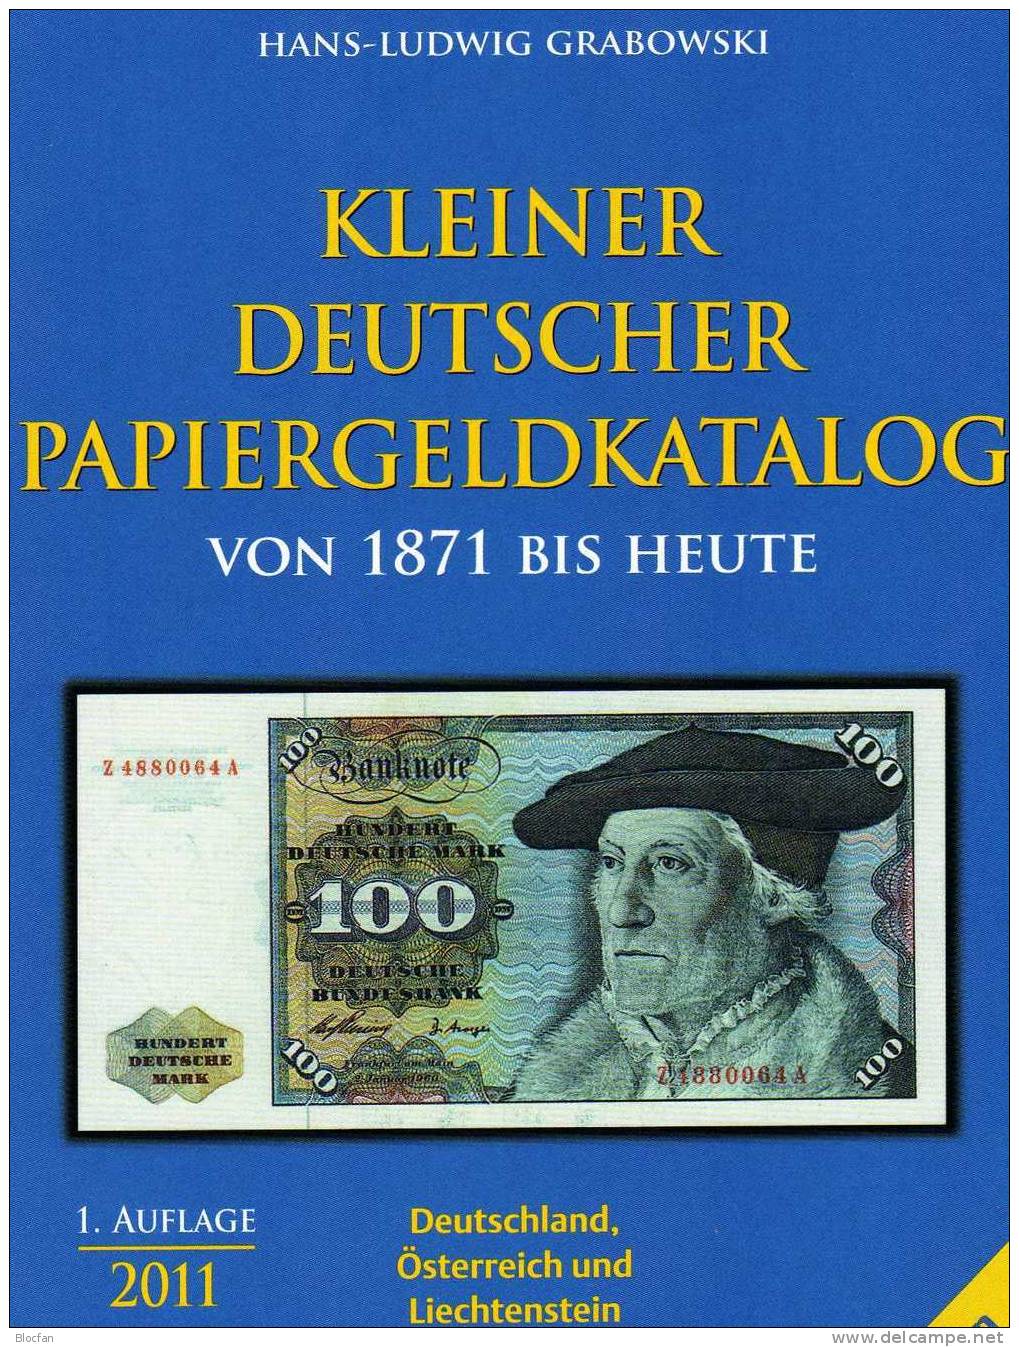 Banknoten Katalog Deutschland 2011 new 12€ für Papiergeld neue Auflage EURO-Banknoten Grabowski Battenberg of catalogue